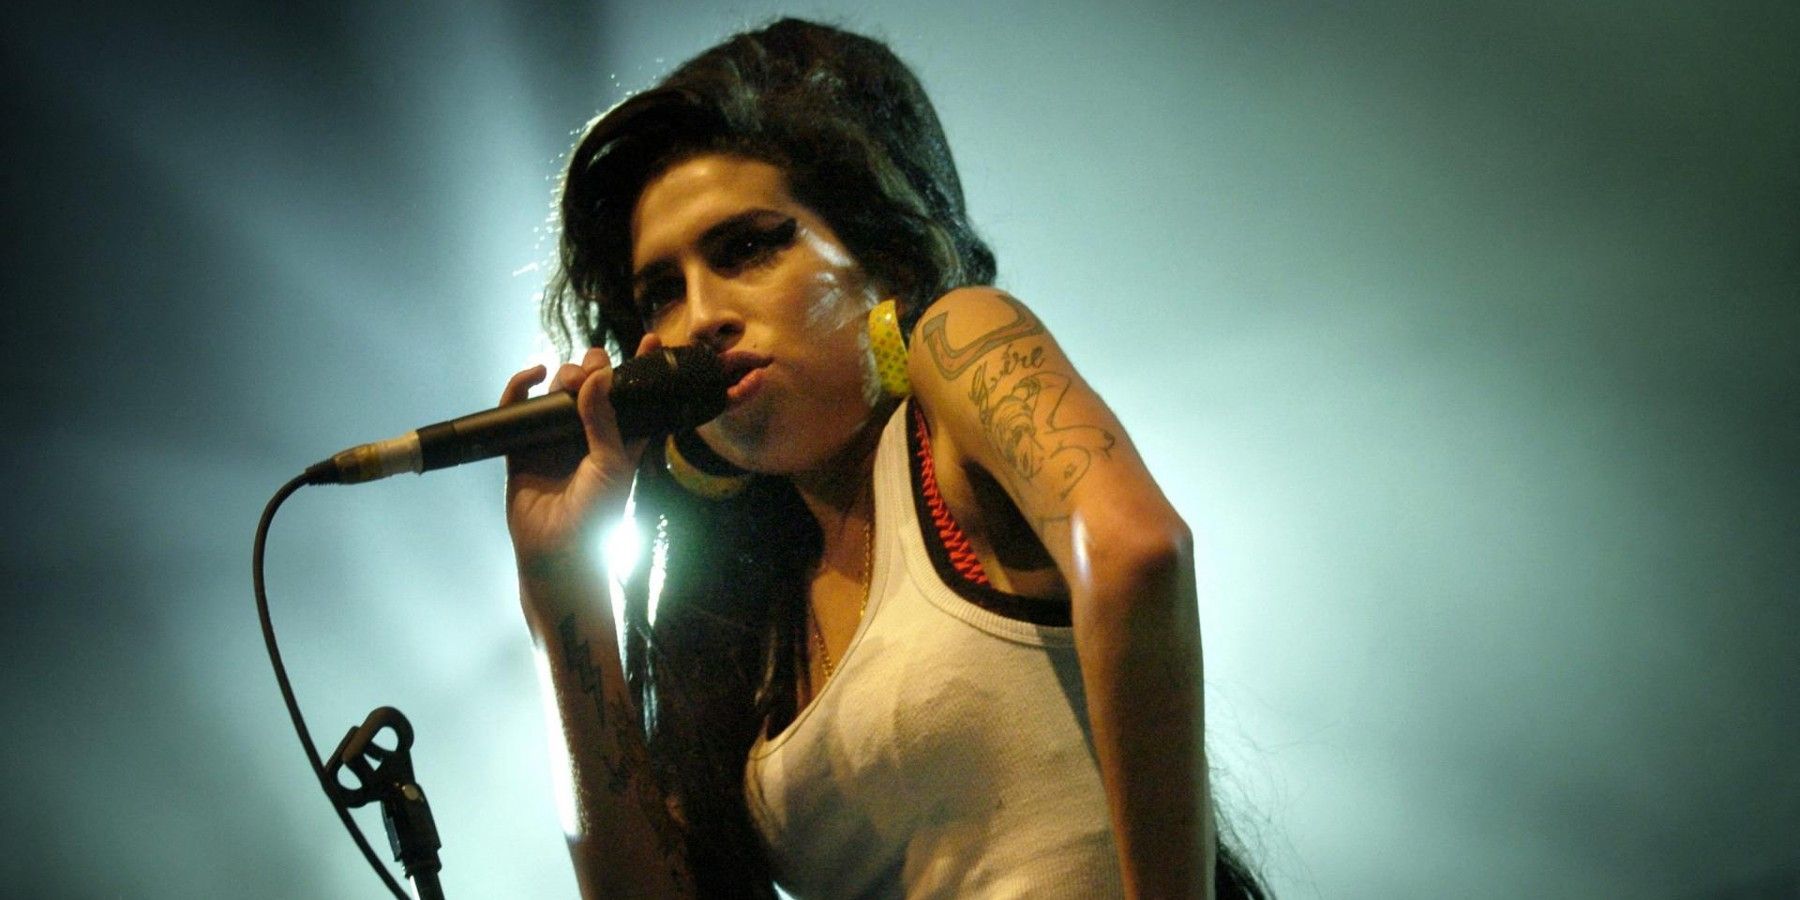 Amy Winehouse singing